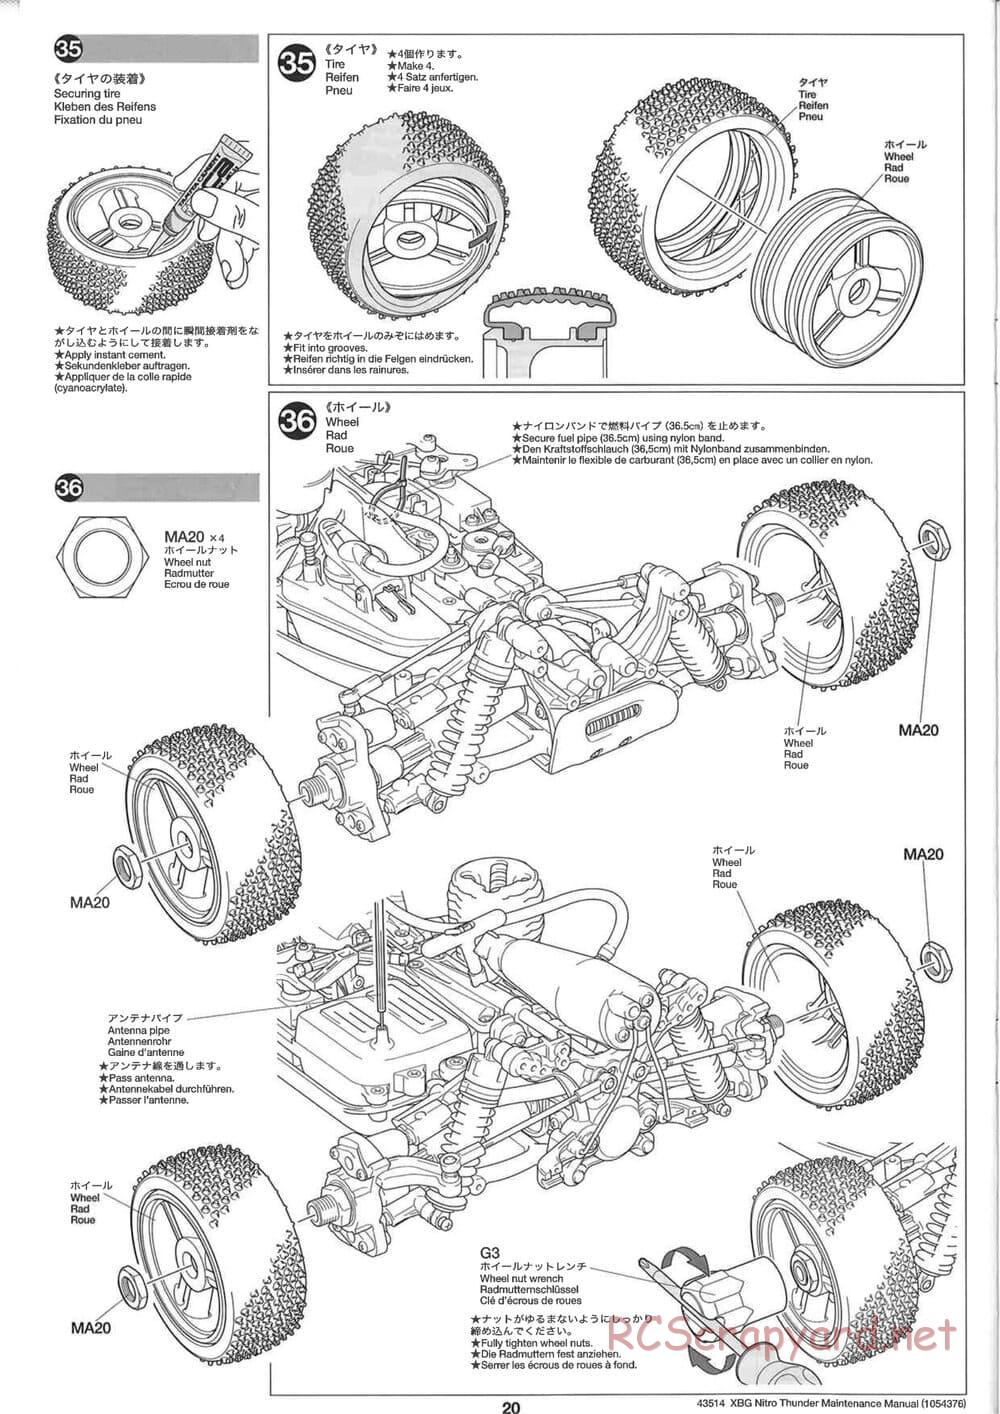 Tamiya - Nitro Thunder - NDF-01 Chassis - Manual - Page 20